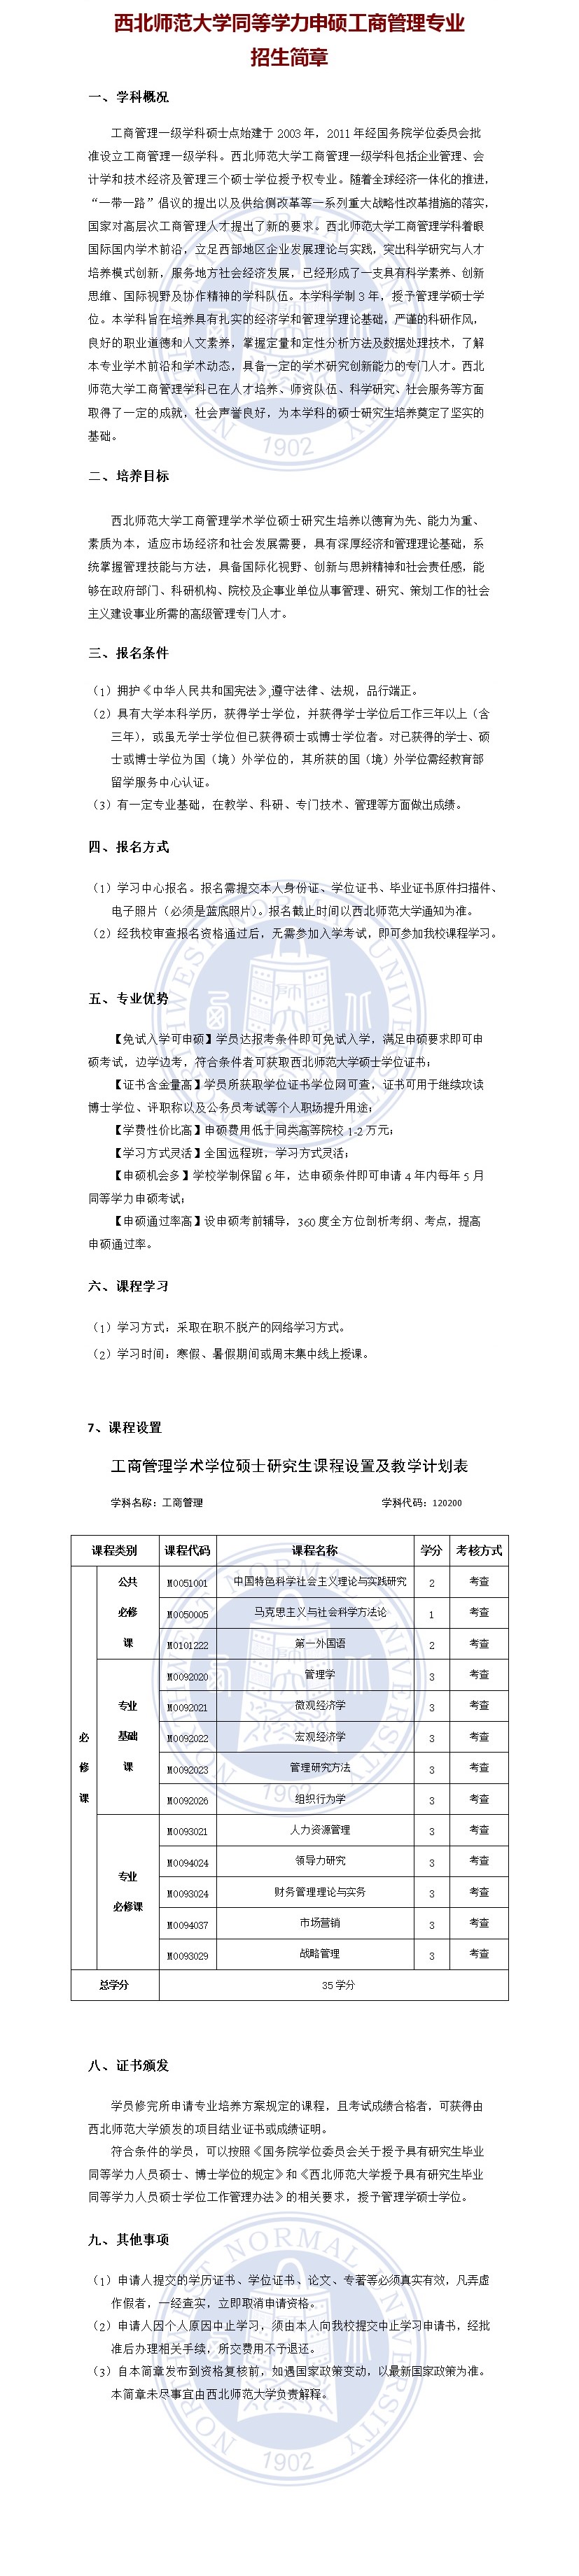 1688022018_西北师范大学工商管理专业招生简章.jpg